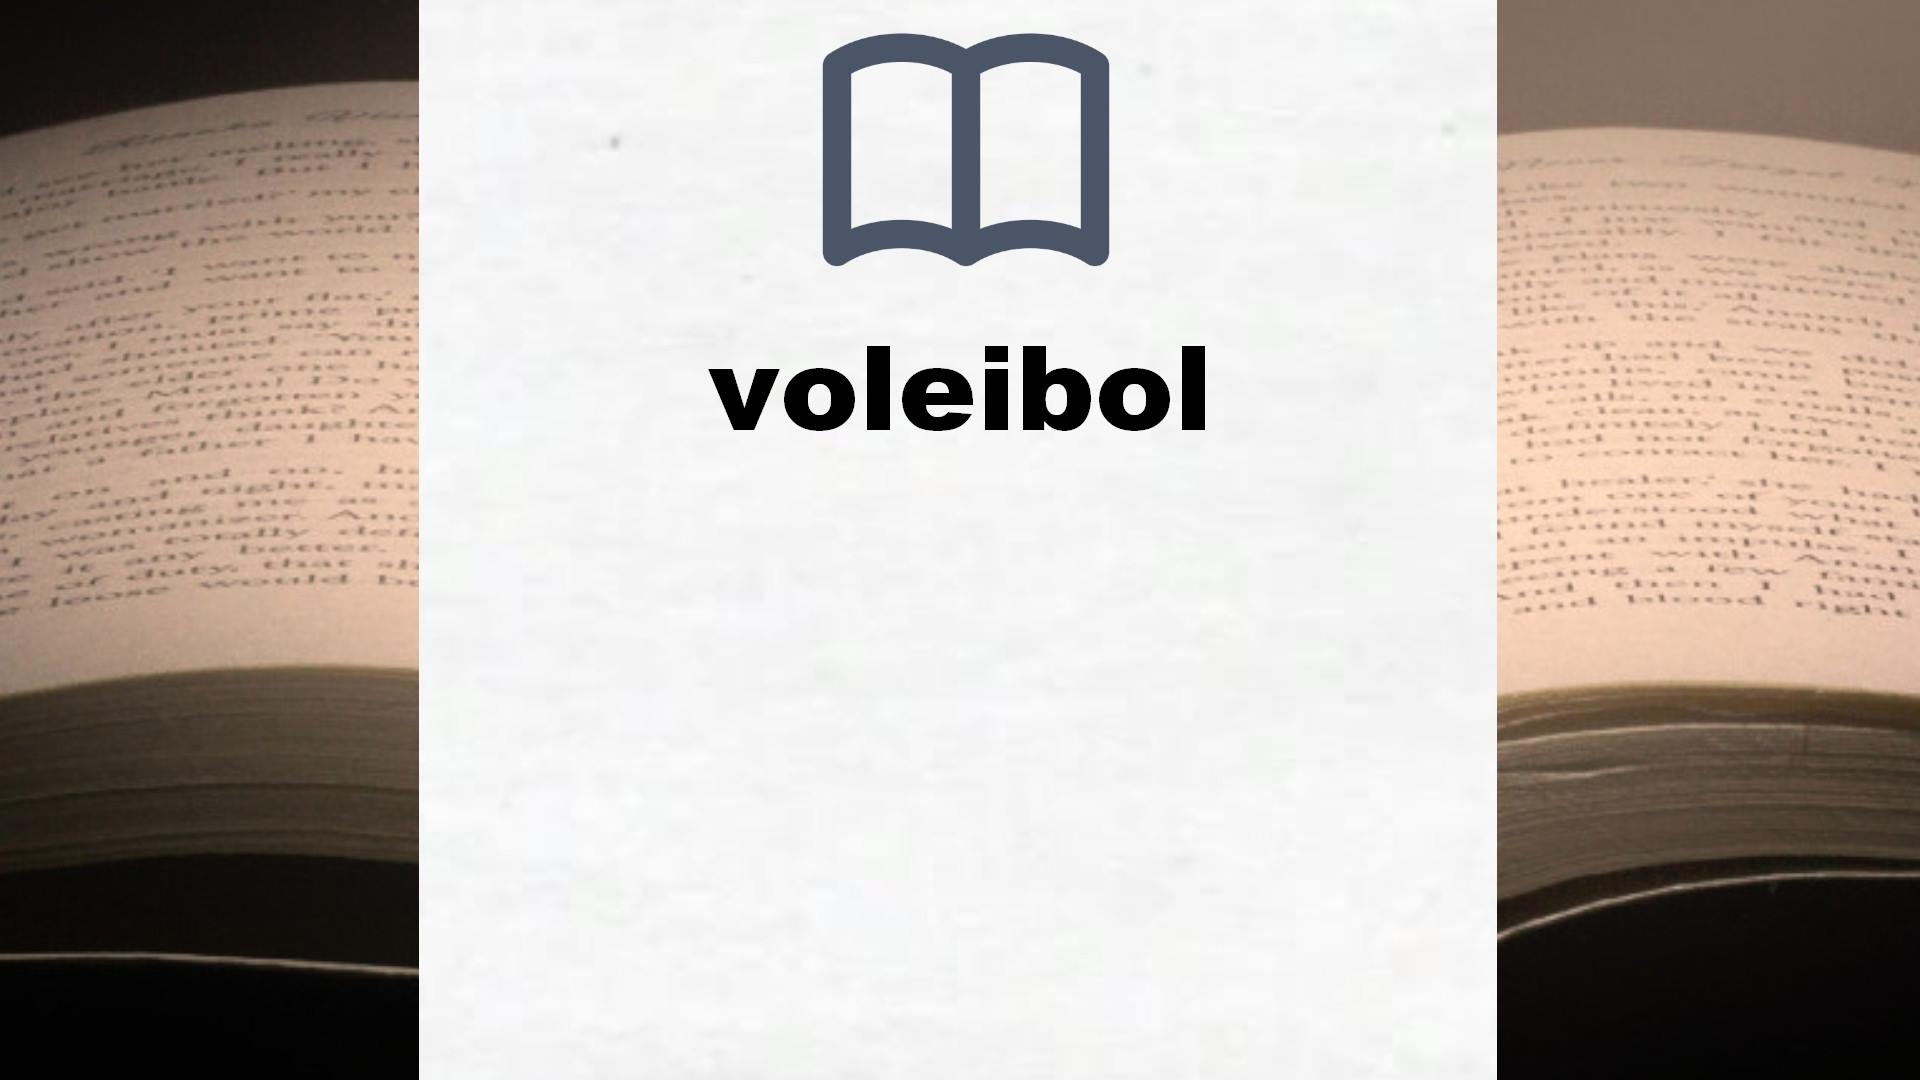 Libros sobre voleibol